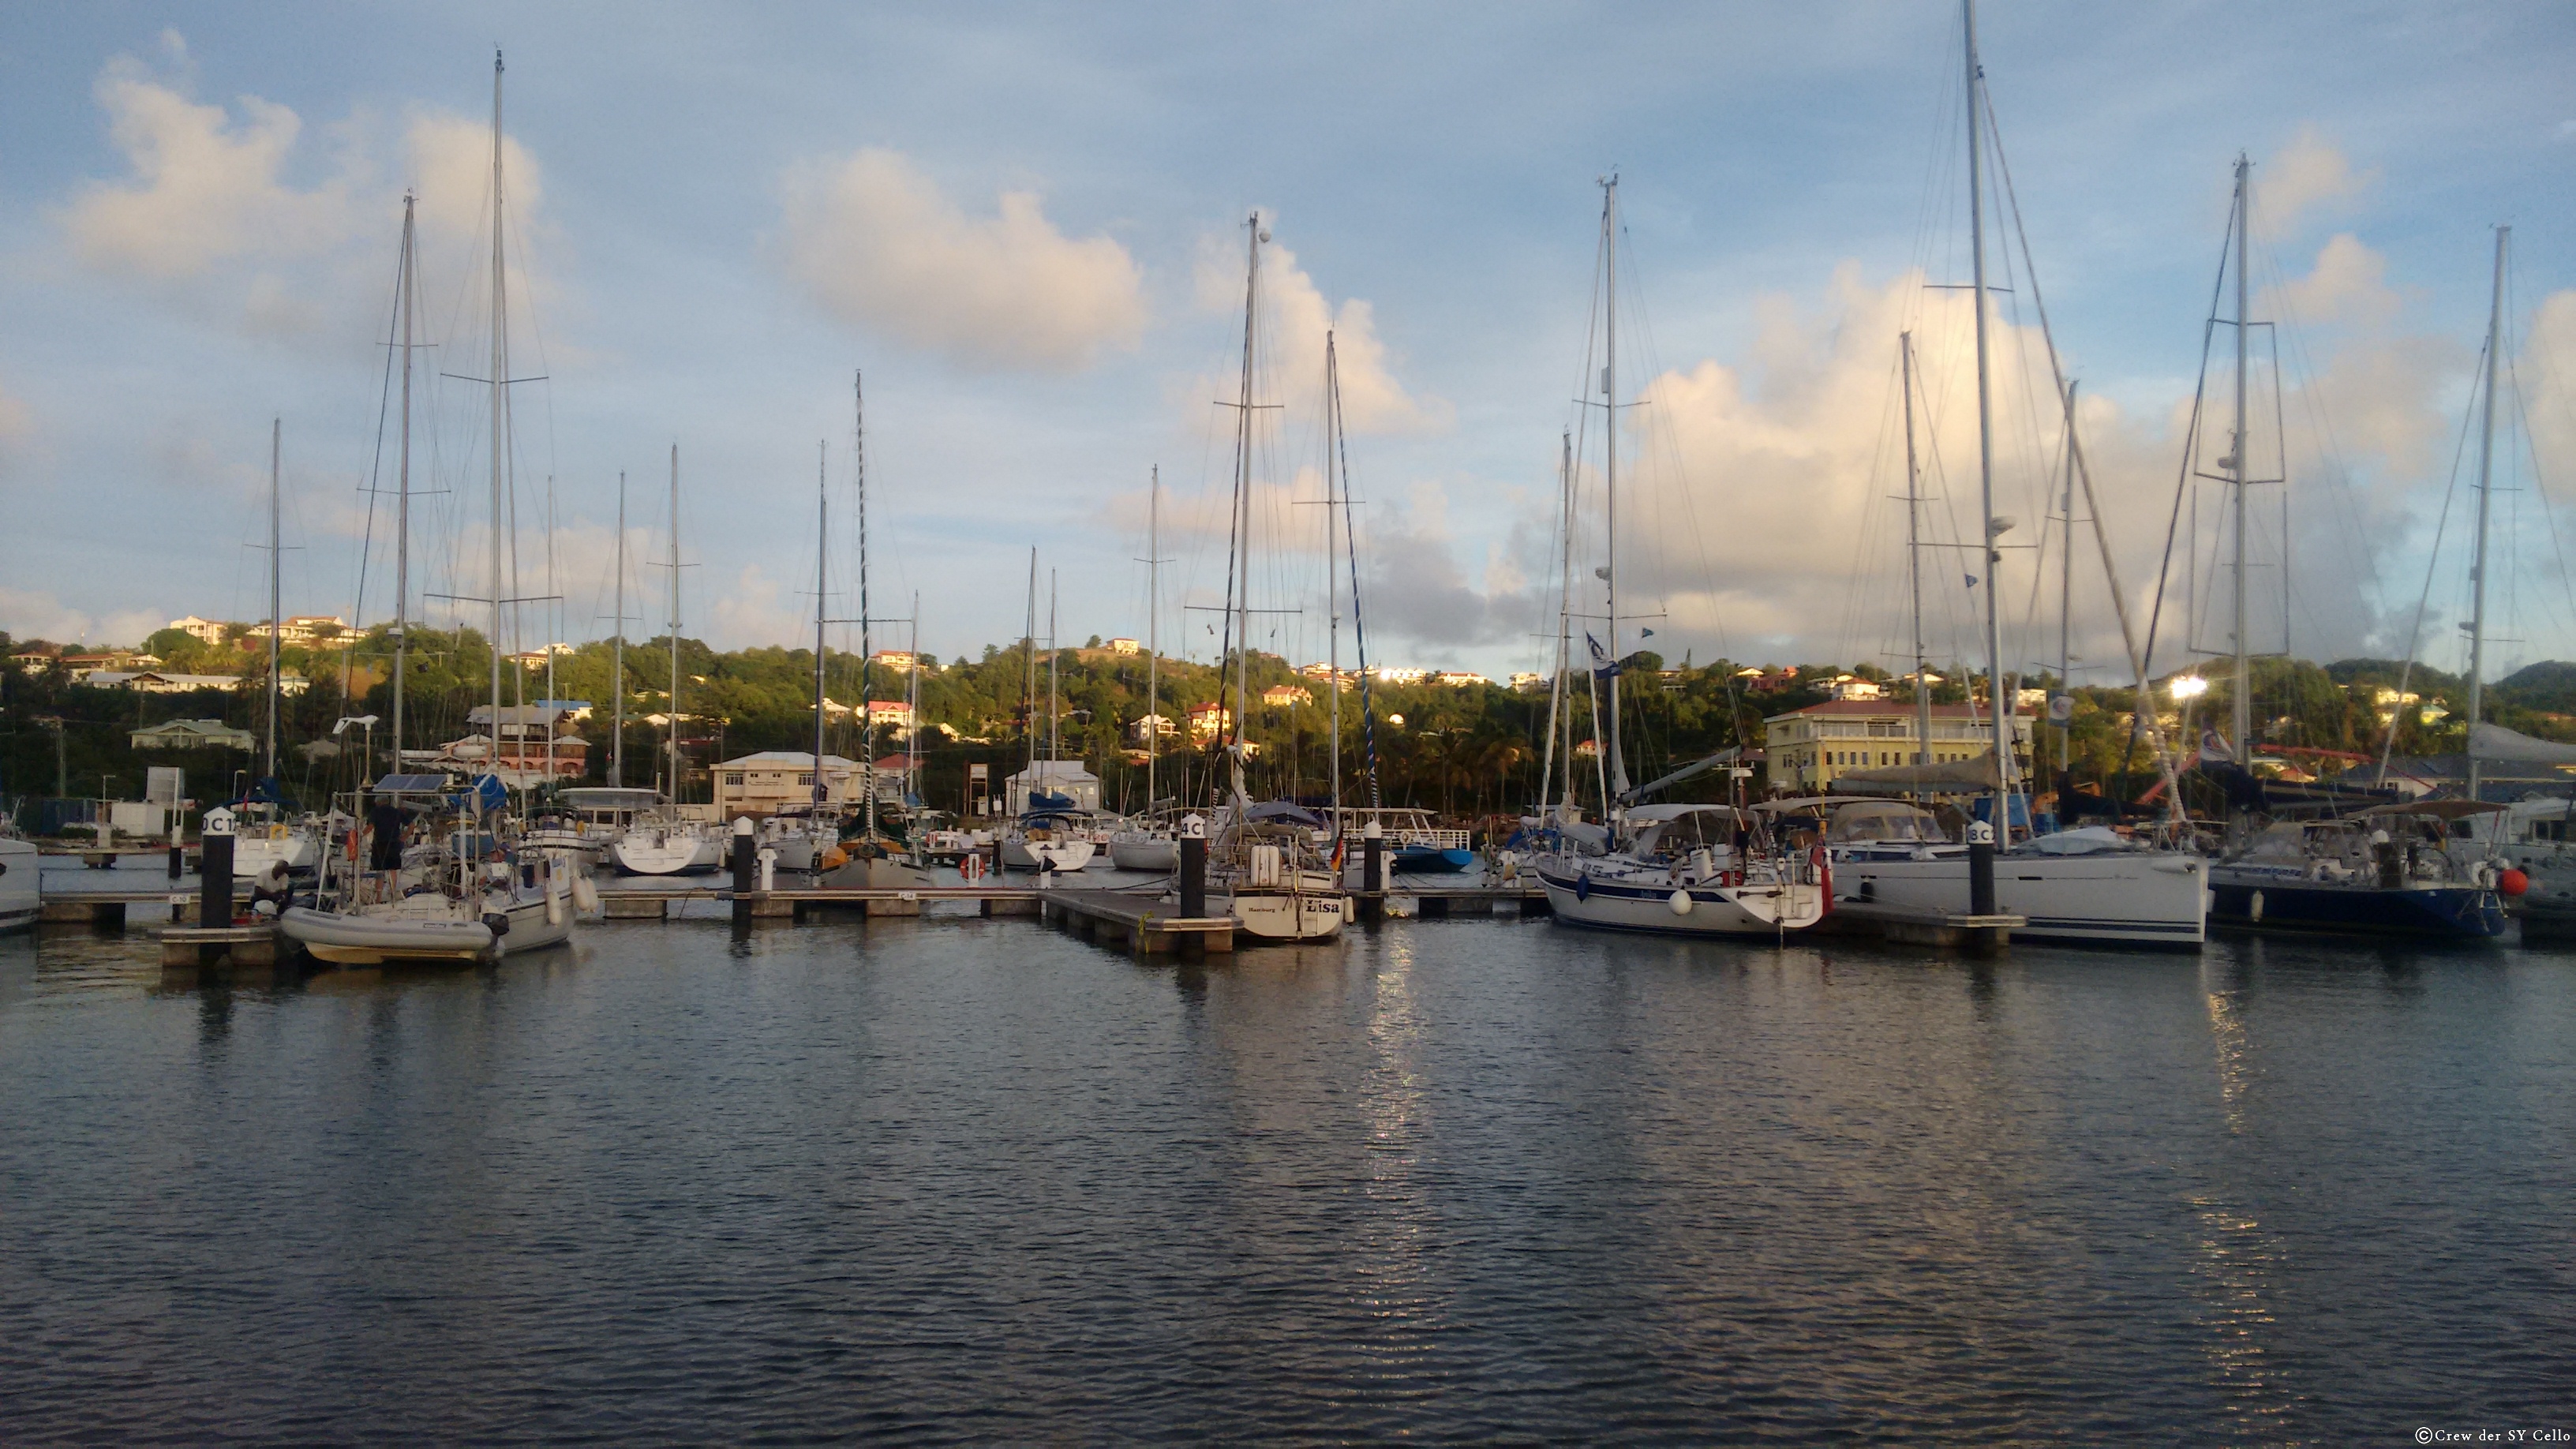 Sonnenuntergang in der Rodney Bay Marina, St. Lucia. Mittig ist das Segelboot Lisa zu sehen.